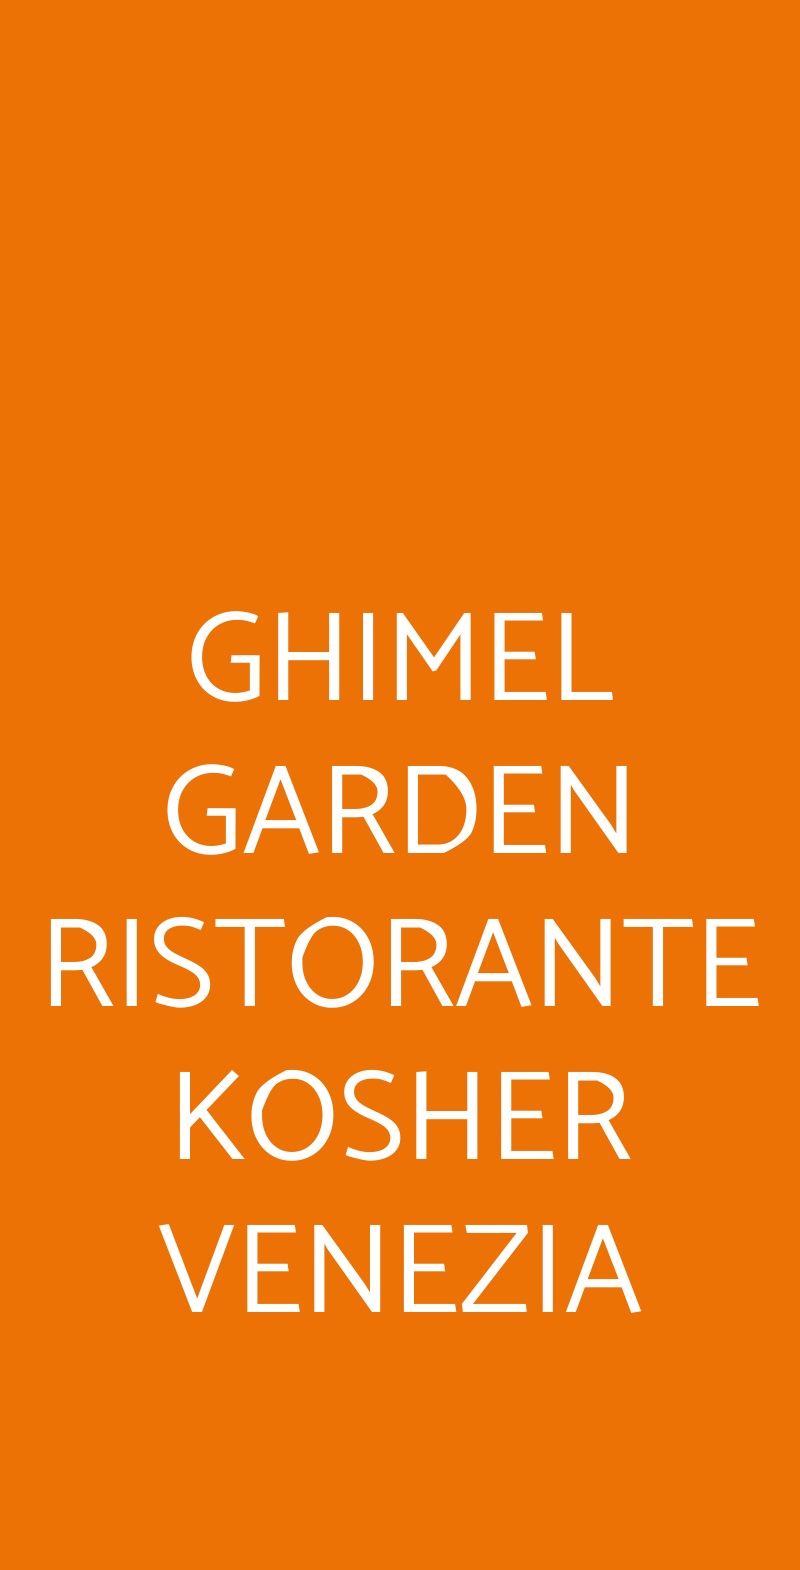 GHIMEL GARDEN RISTORANTE KOSHER VENEZIA Venezia menù 1 pagina